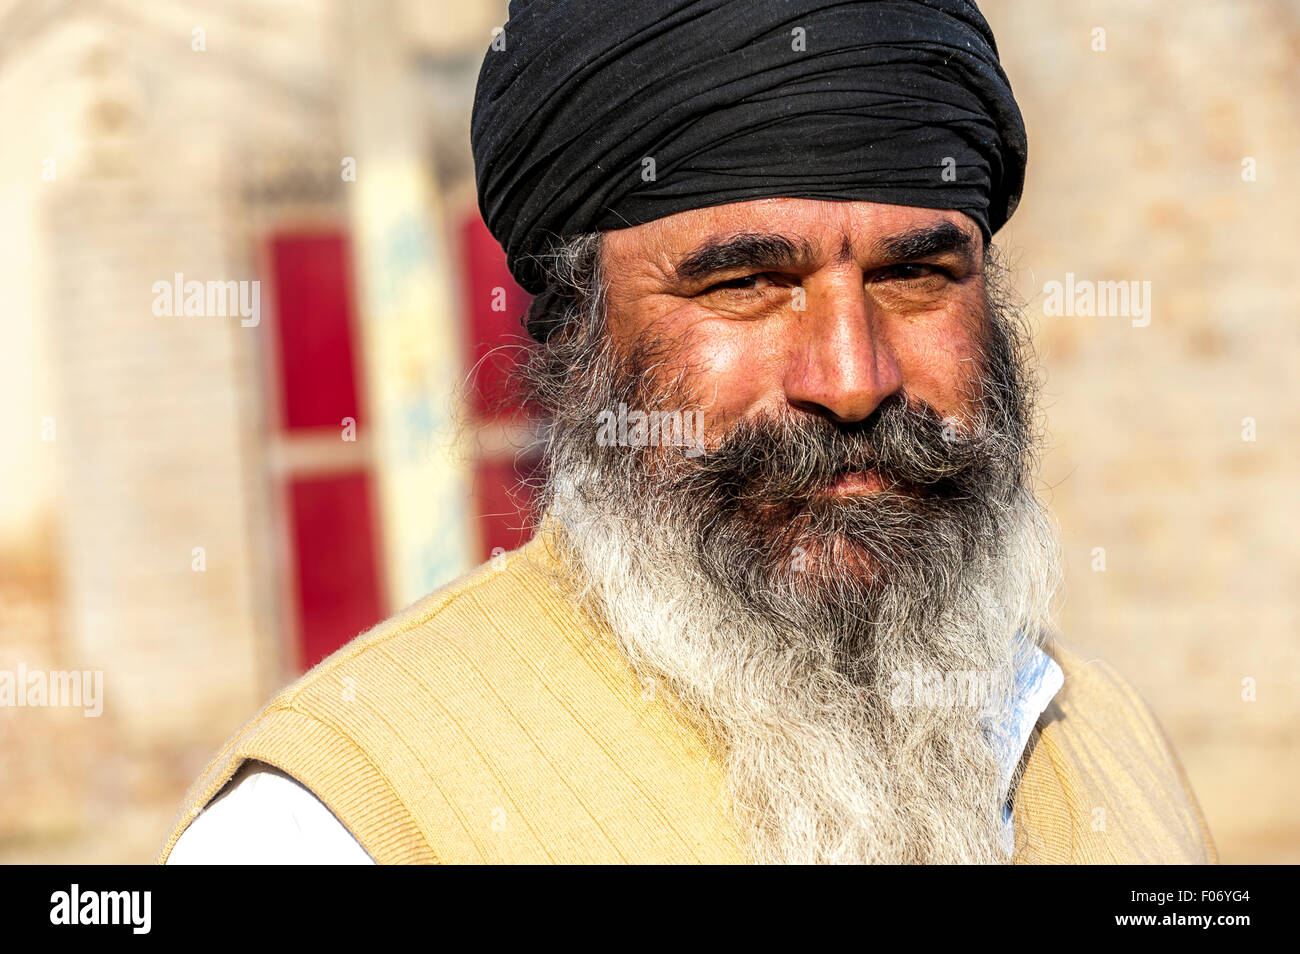 Le punjabi man smiling avec turban noir et une barbe grisonnante merveilleux Banque D'Images